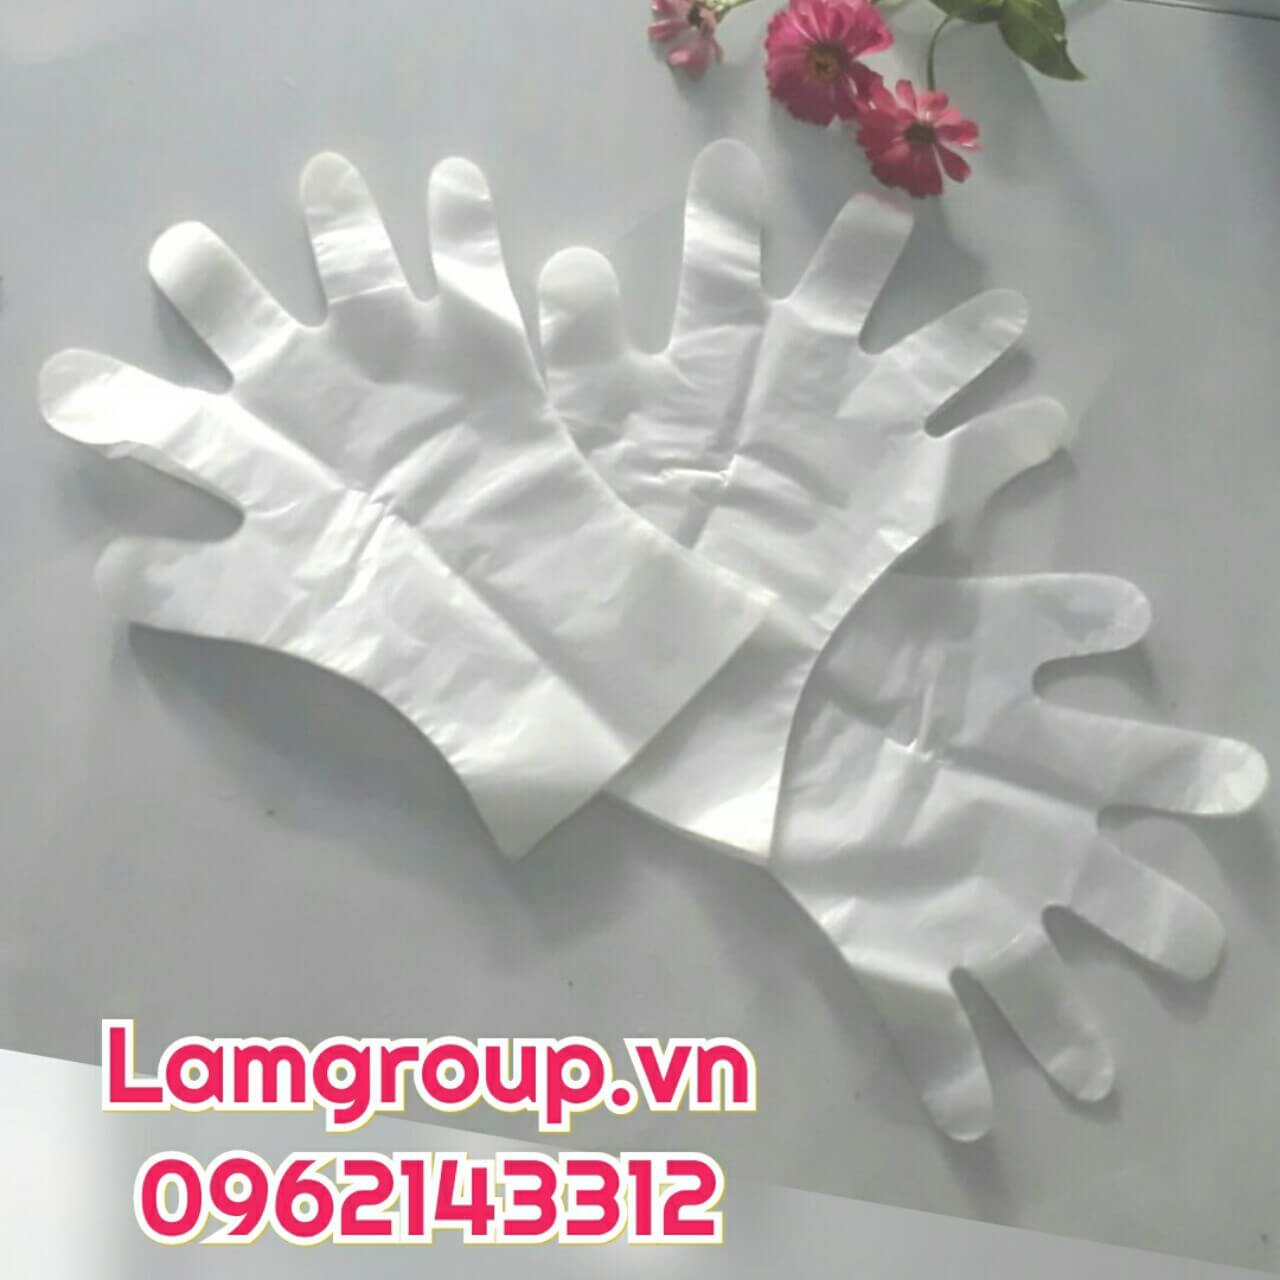 Găng tay nilon nhựa